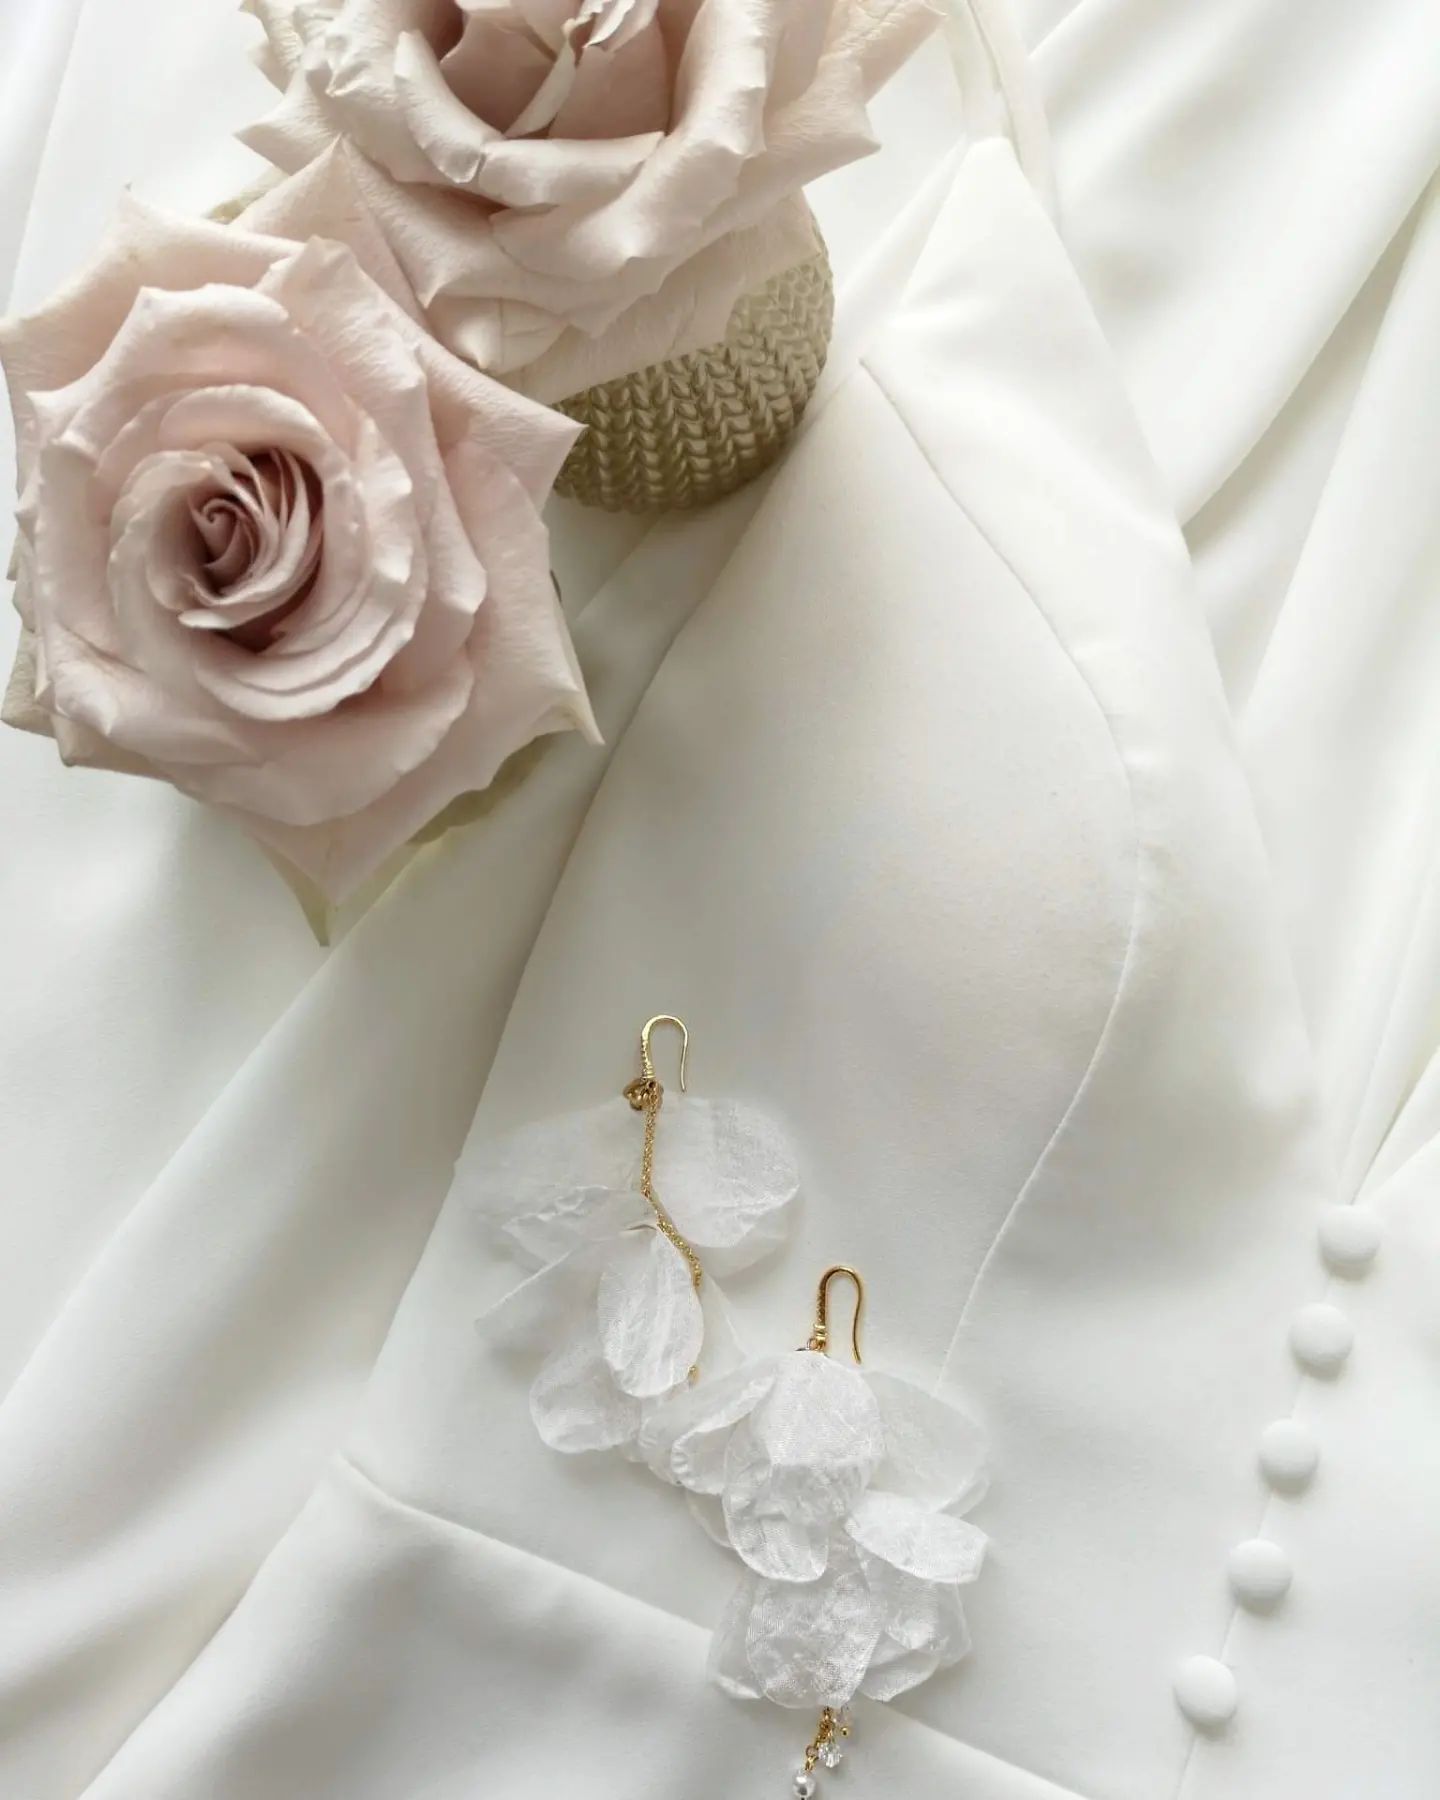 Kolczyki ▪︎DARLA GOLD▪︎ będą idealnym dodatkiem do gładkich, minimalistycznych sukni ślubnych.
Płatki kwiatów wykonane zostały z jedwabnej, delikatnej tkaniny. 
Kolczyki są widoczne na uchu (10.5 cm długości), a jednocześnie są lekkie, eteryczne.
.
▪︎ Śliczne róże w wazonie od @bedzieslub
Dziękujemy 💕 Zwróćcie uwagę na niesamowity kolor pudrowego różu 😍 Zdjęcie bez filtra.
.
▪︎ Suknia ślubna - model TATUM - z kolekcji @allwhowander
.
A już wkrótce kolczyki DARLA będą dostępne z kwiatami w kolorze: fuksja, fiolet, ochra. 
✅ Ciekawe jesteście efektu? 》Stay tuned 😊
.
.
.
.
.
.
.
#kolczyki #kolczykikwiaty #kwiatyzjedwabiu
#kolczykislubne #biżuteriaslubna #pannamloda #wesele #slub #sukniaślubna